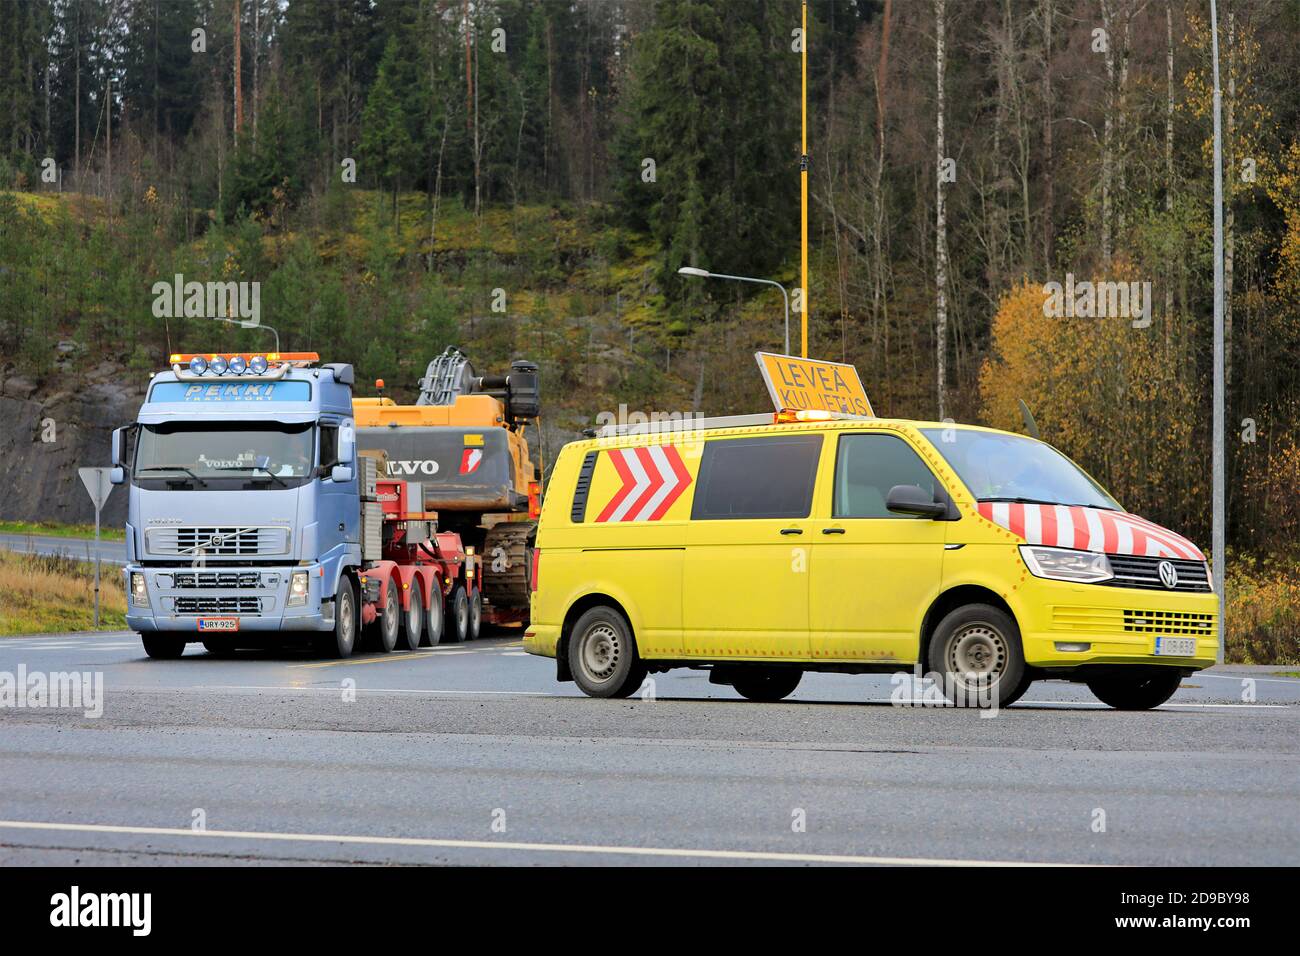 Pilotfahrzeug unterstützt Volvo FH Sattelauflieger mit Übergröße Lasttransport von Volvo EC700CL Raupenbagger. Forssa, Finnland. Oktober 30 2020. Stockfoto